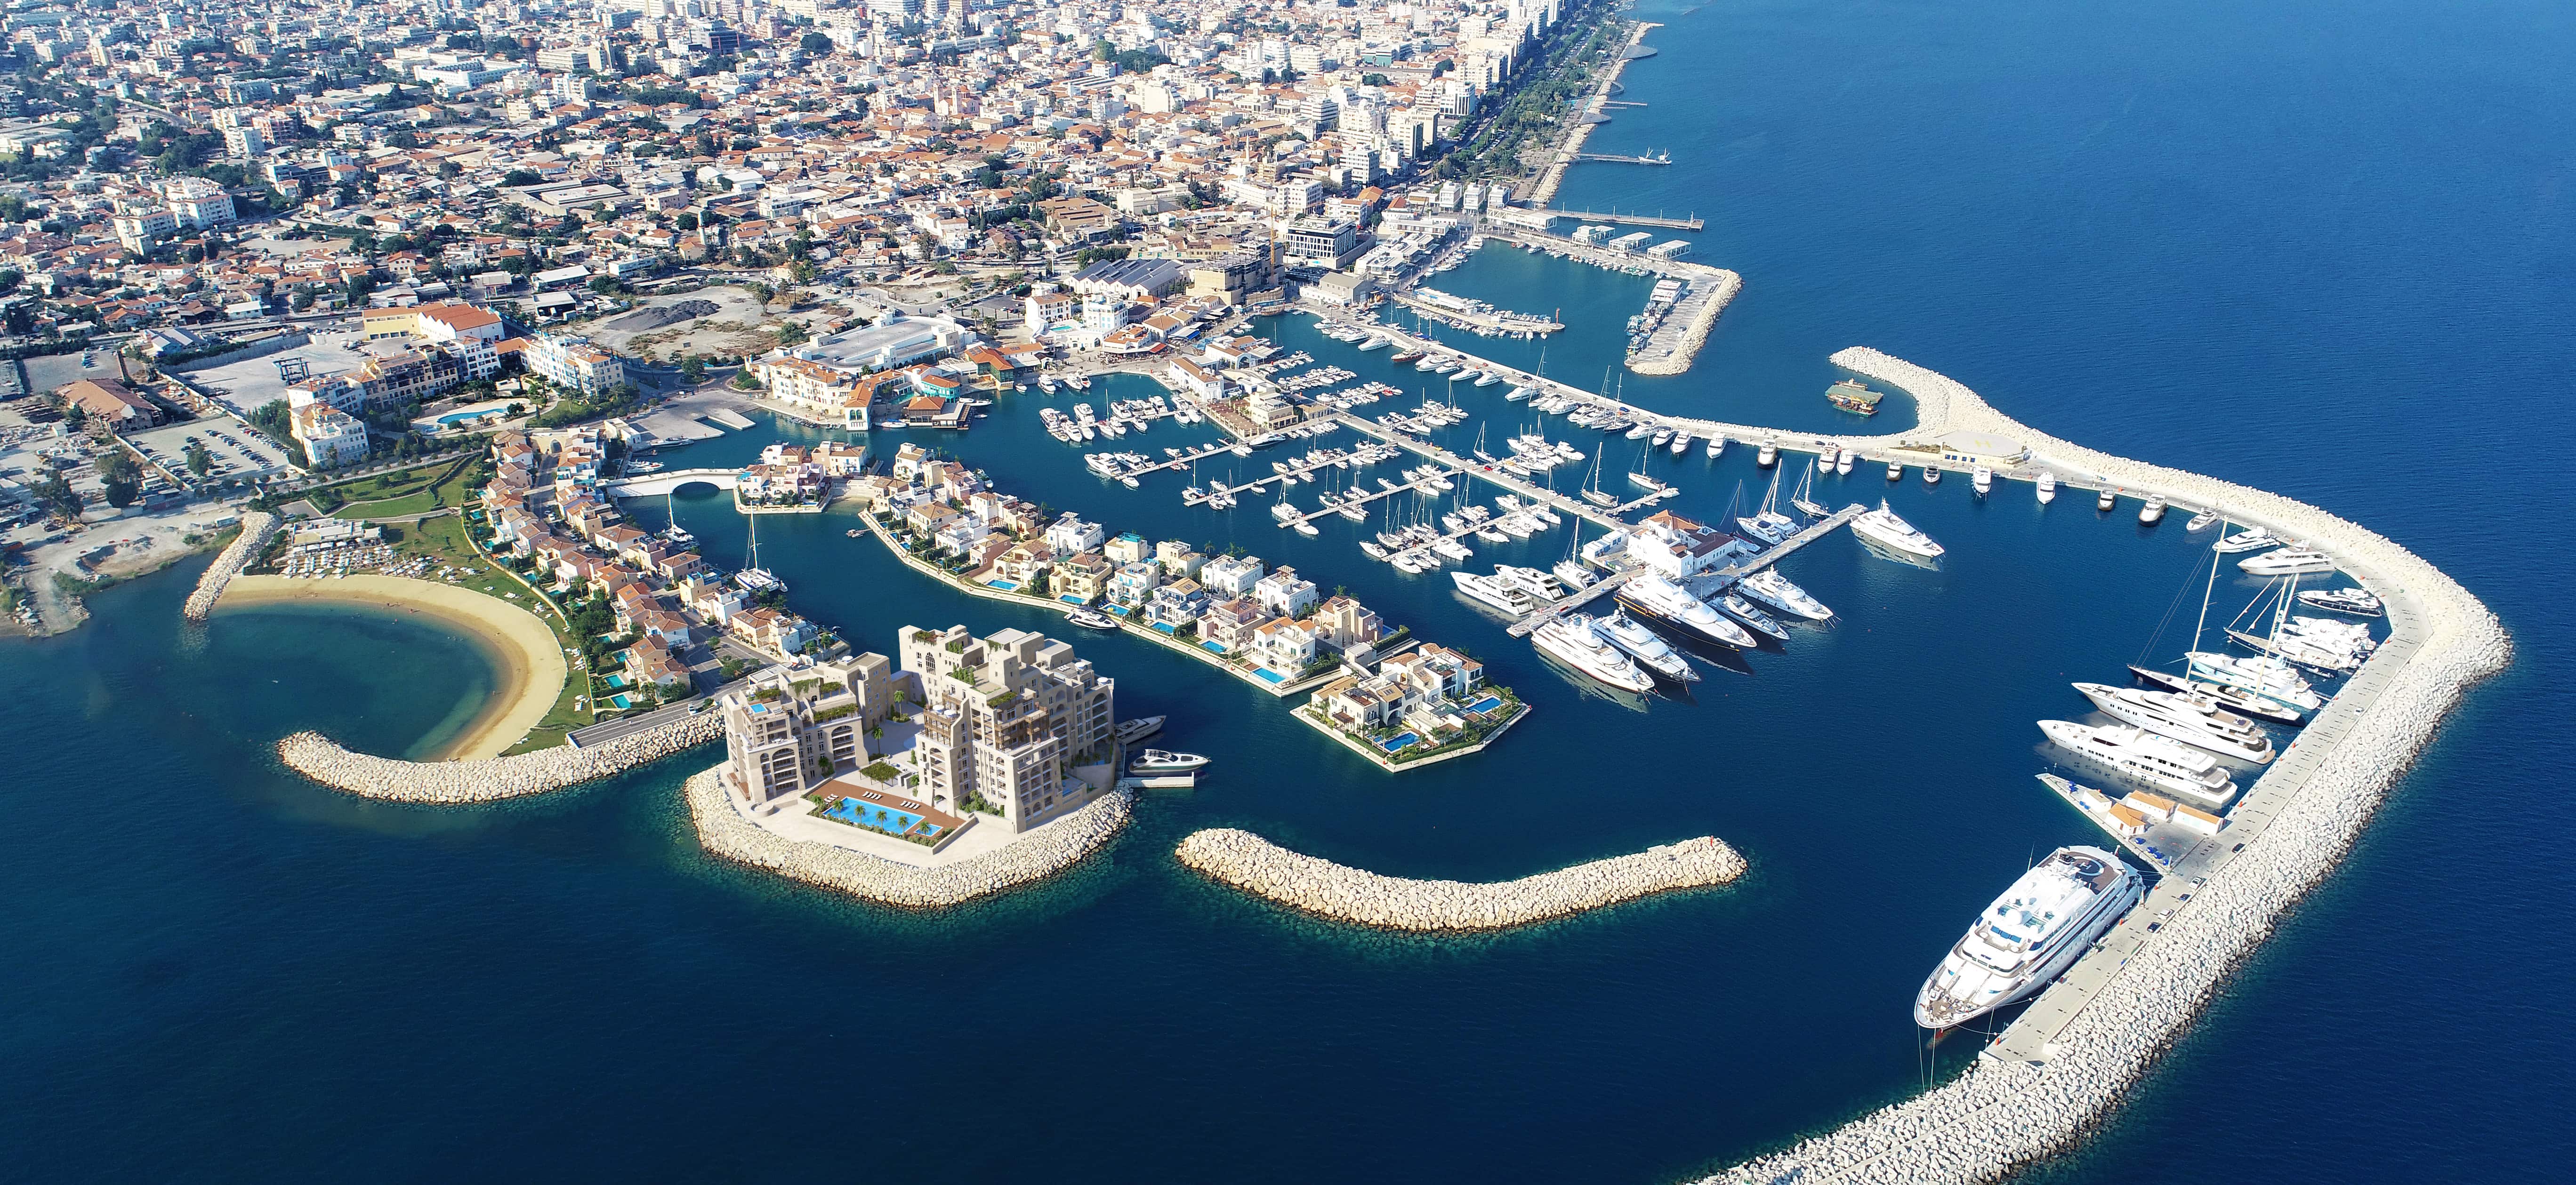 Limassol marina купить жилье в турции русскому цены